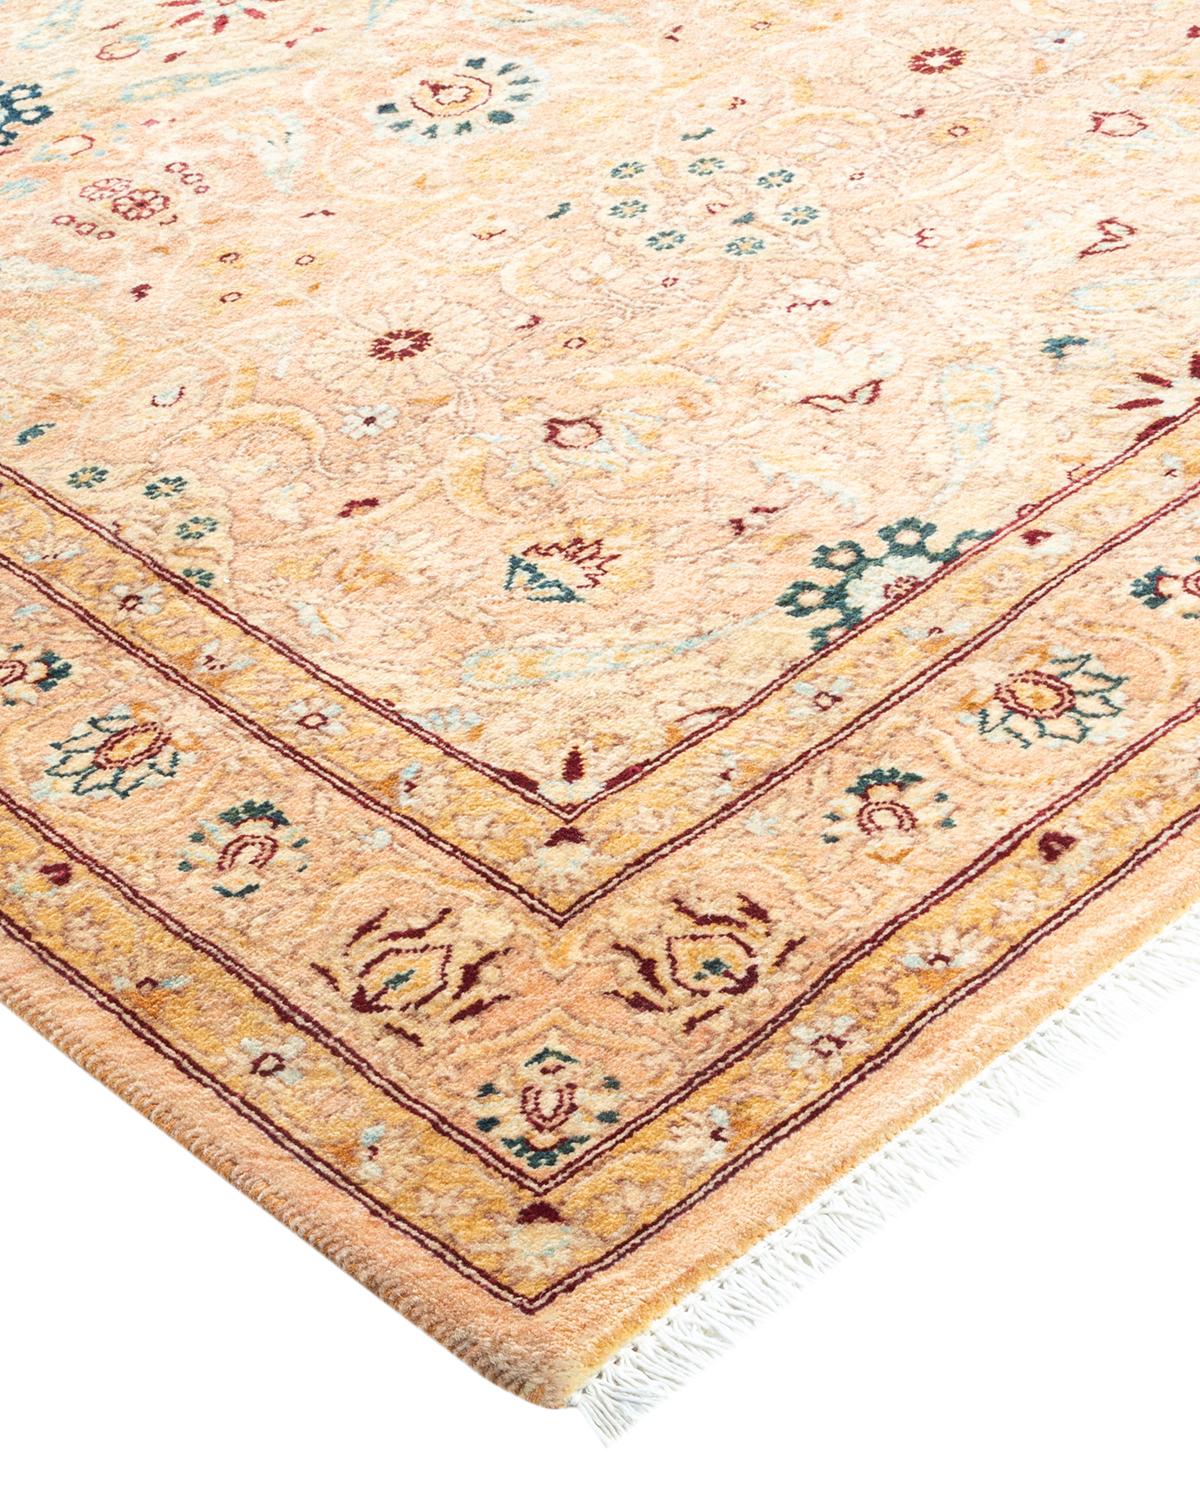 Avec leurs palettes discrètes et leurs motifs en relief, les tapis de la collection Mogul apporteront une sophistication intemporelle à toutes les pièces. Influencés par un éventail de motifs turcs, indiens et persans, les artisans qui tissent à la